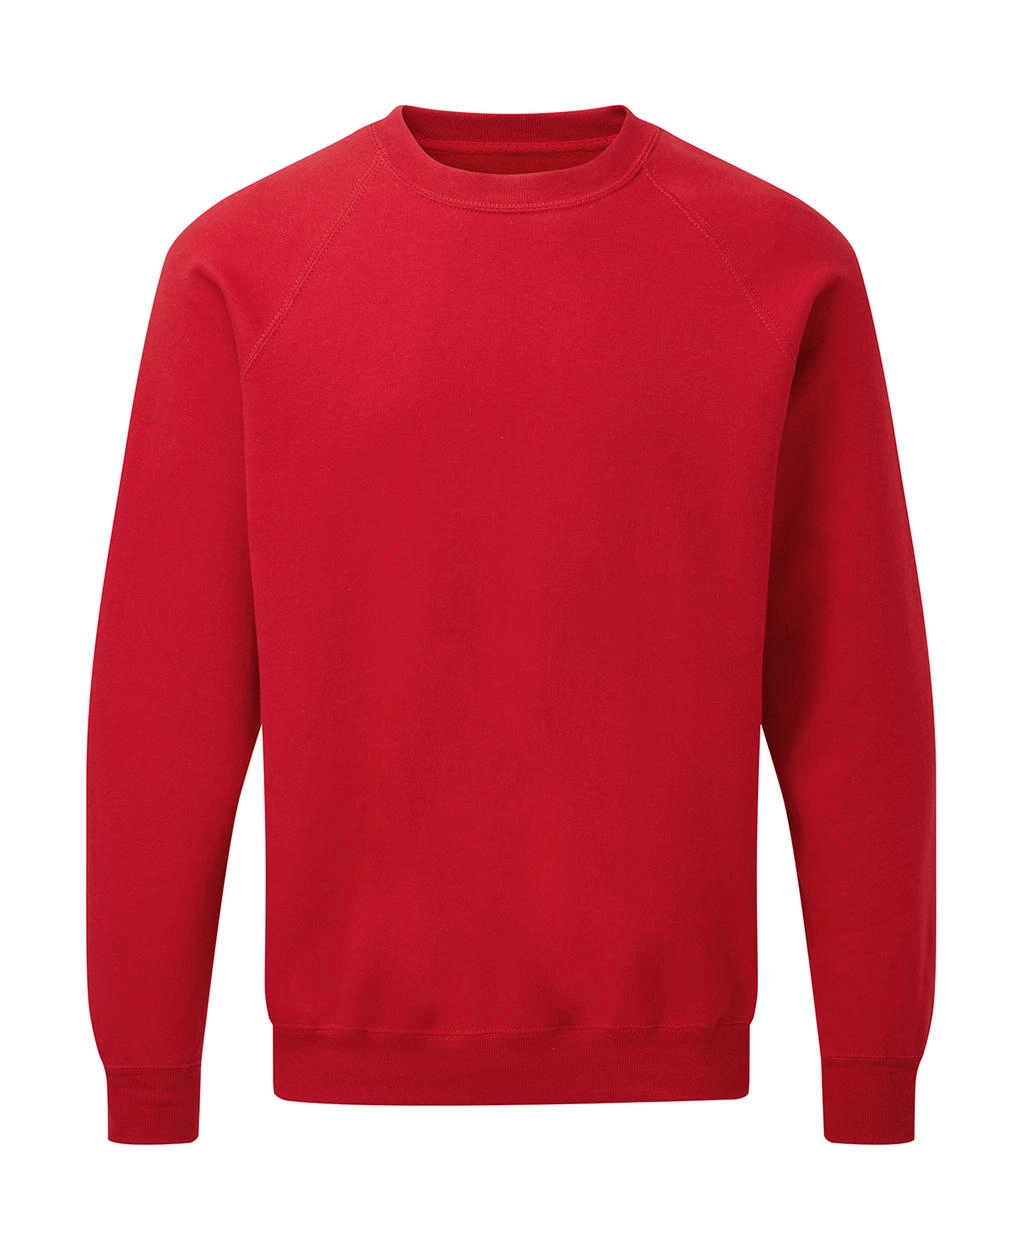 Raglan Sweatshirt Men zum Besticken und Bedrucken in der Farbe Red mit Ihren Logo, Schriftzug oder Motiv.